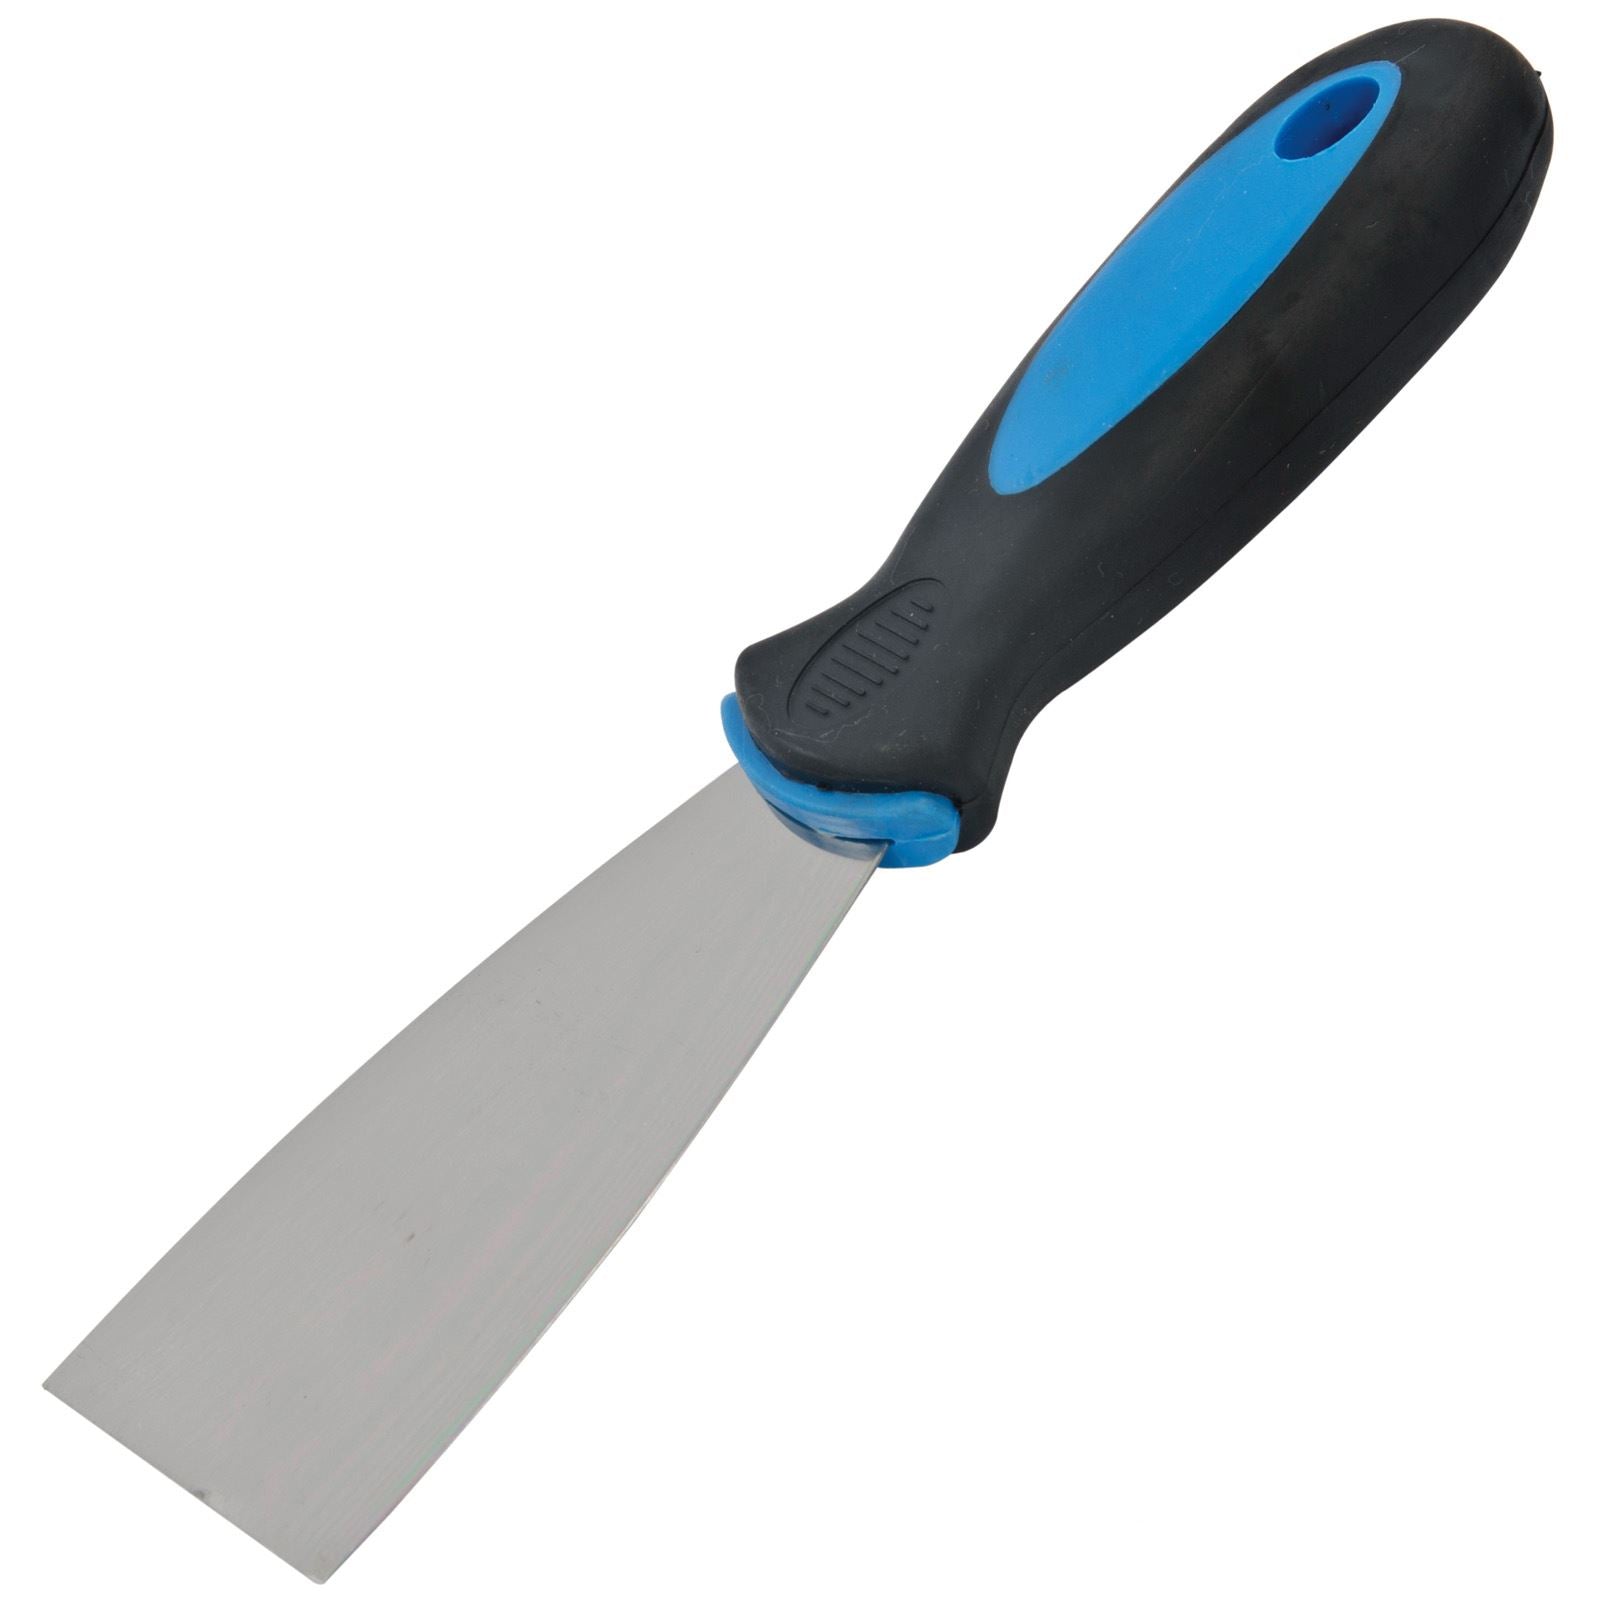 Silverline Filler Knife Soft Grip